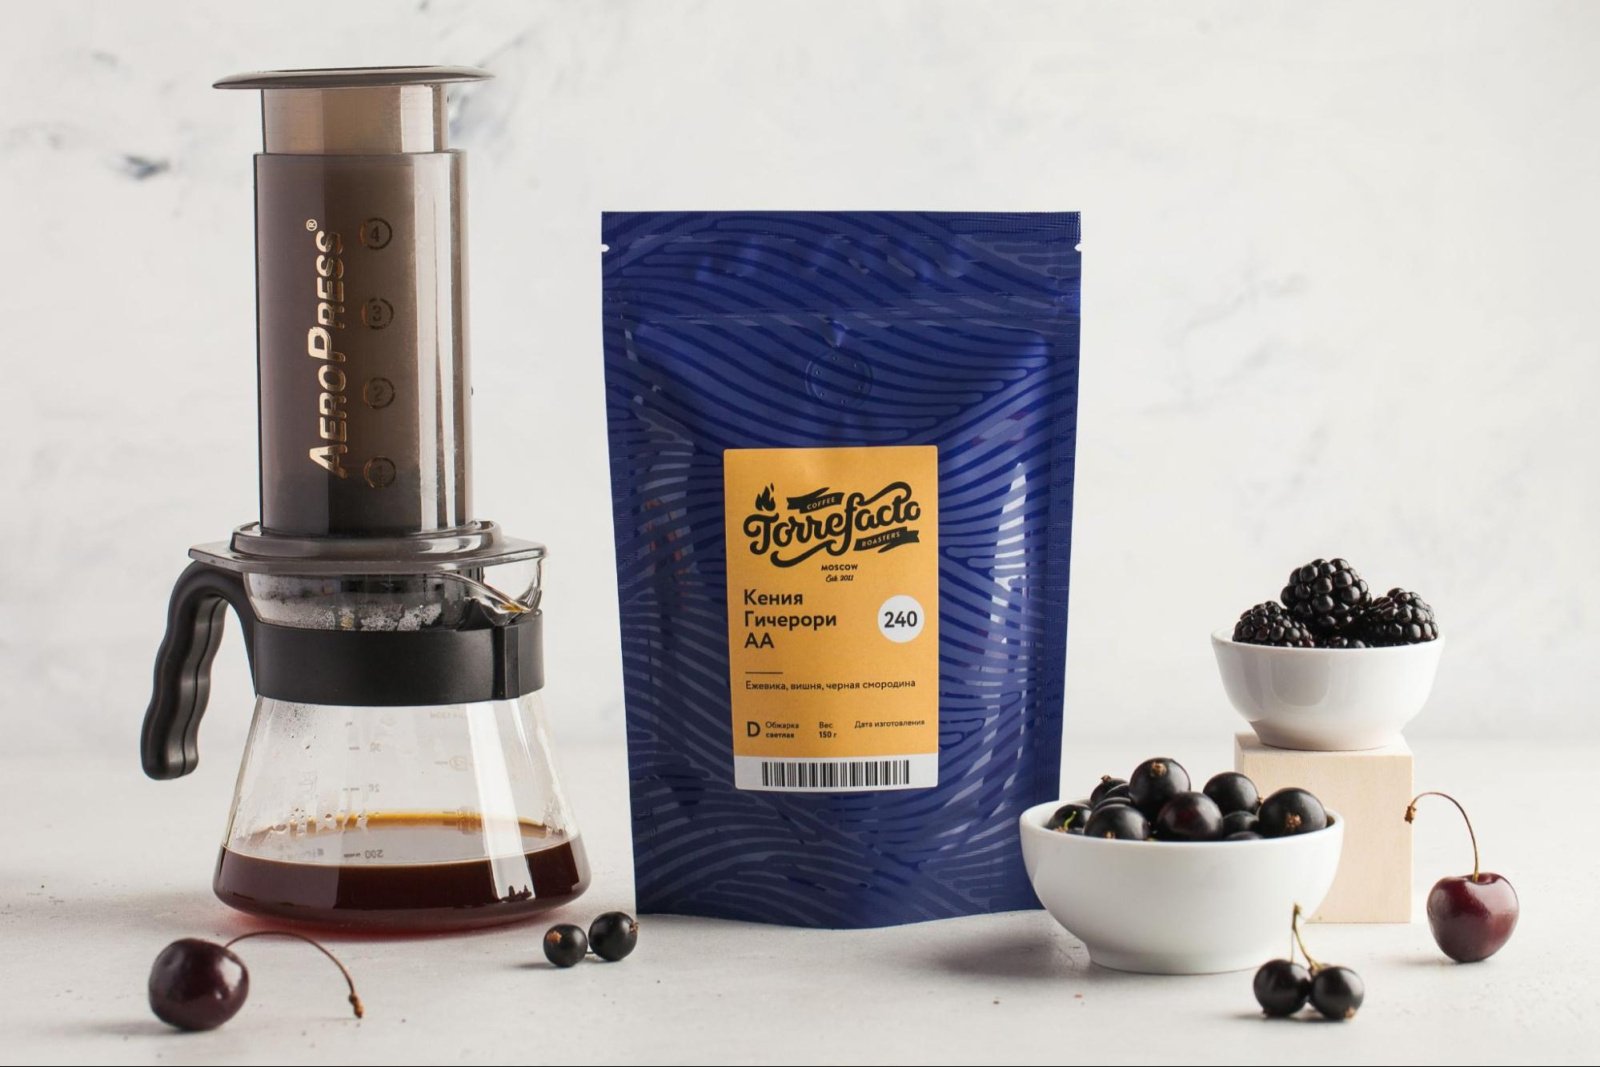 Кофе оптом и другие продукты: что Torrefacto может предложить кофейням?